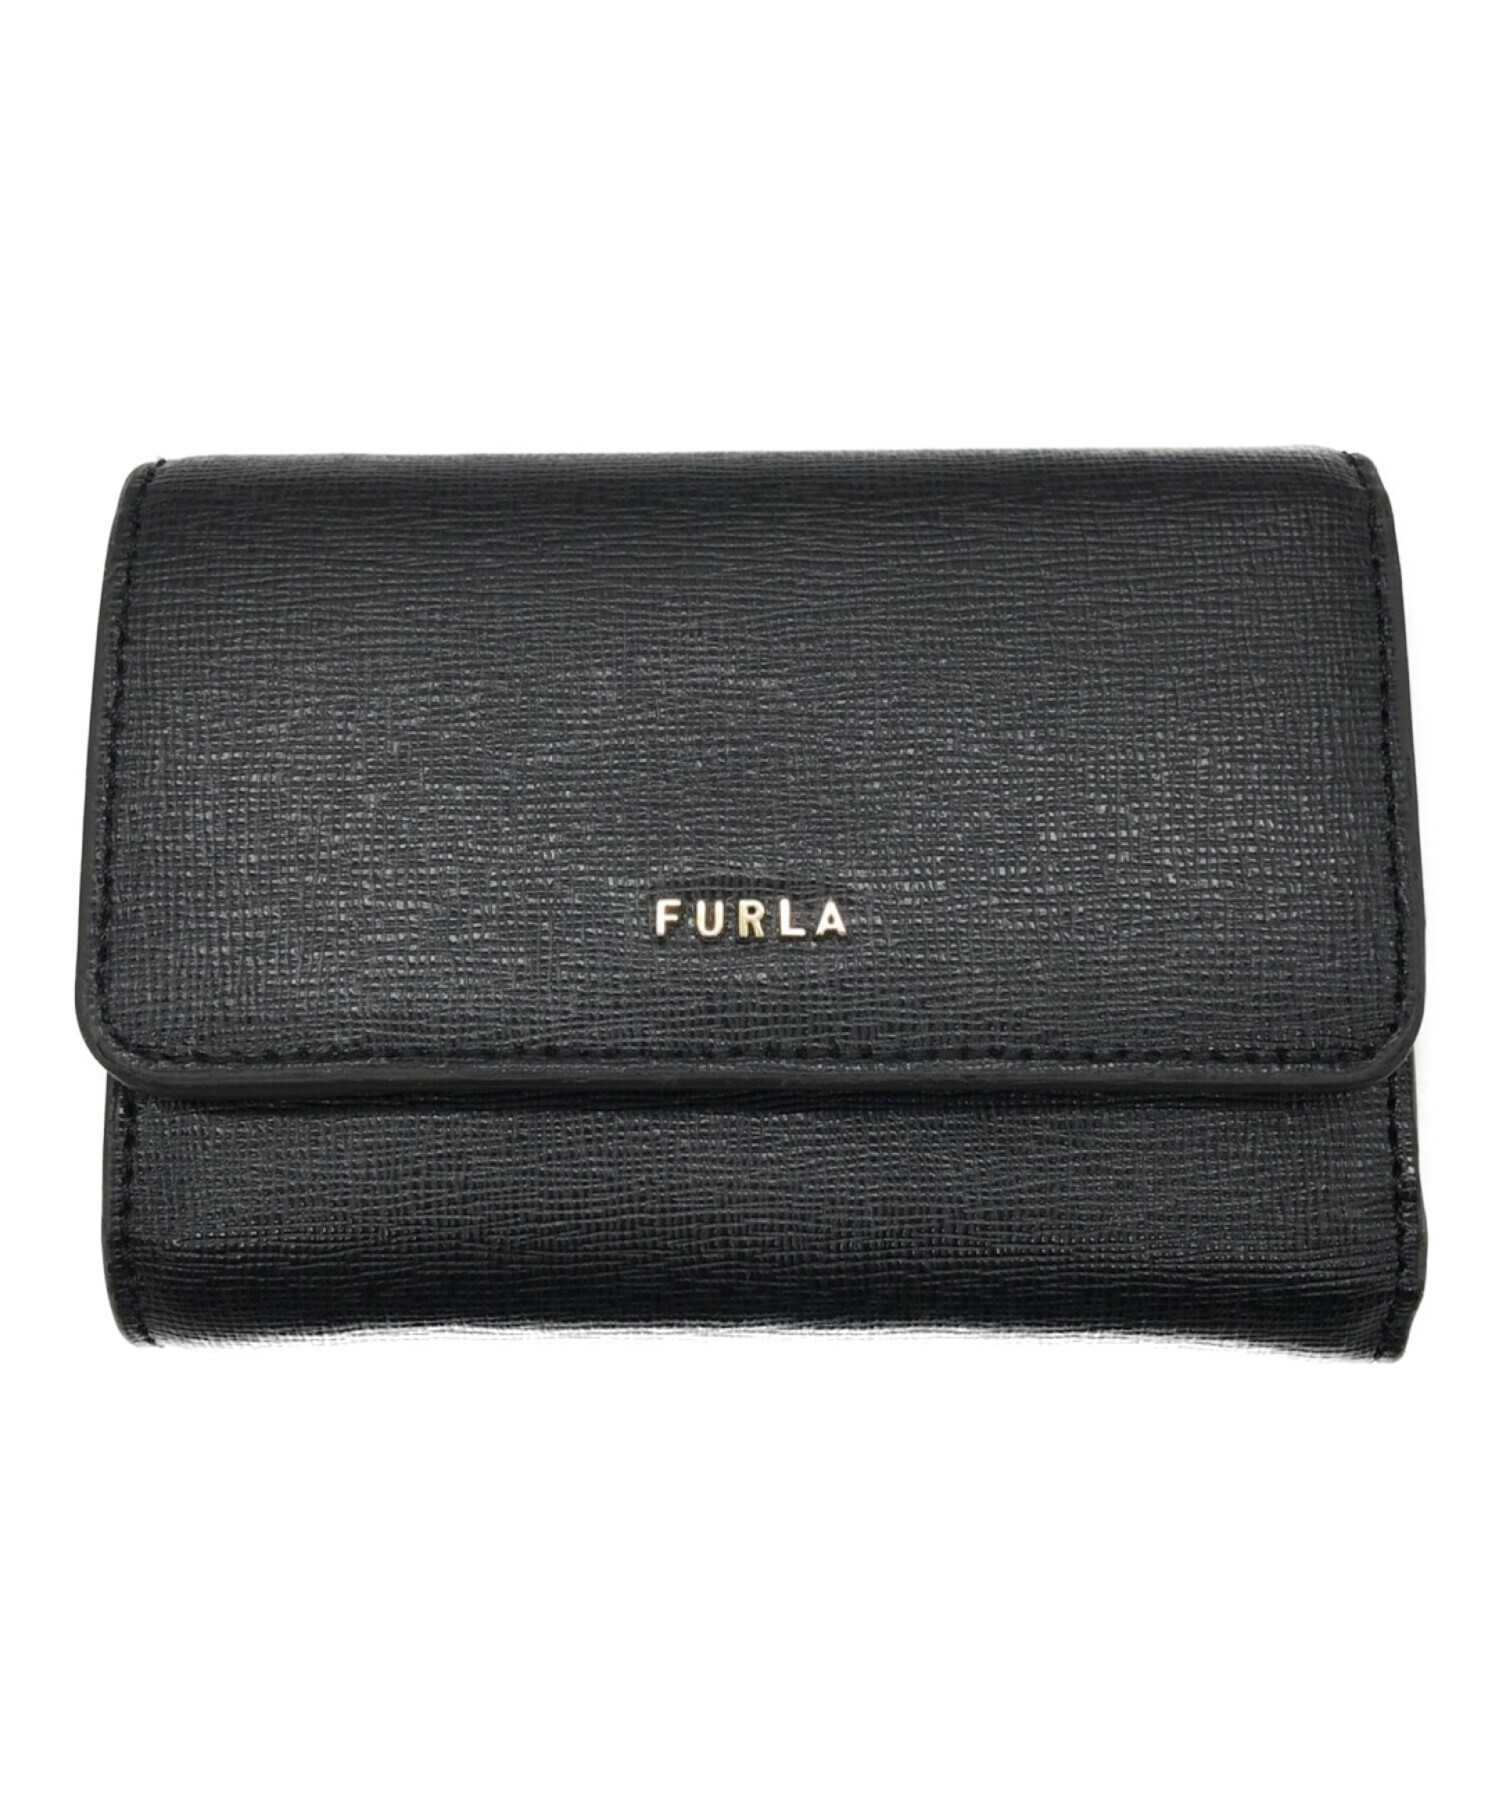 中古・古着通販】FURLA (フルラ) バビロン3つ折り財布 ブラック 未使用